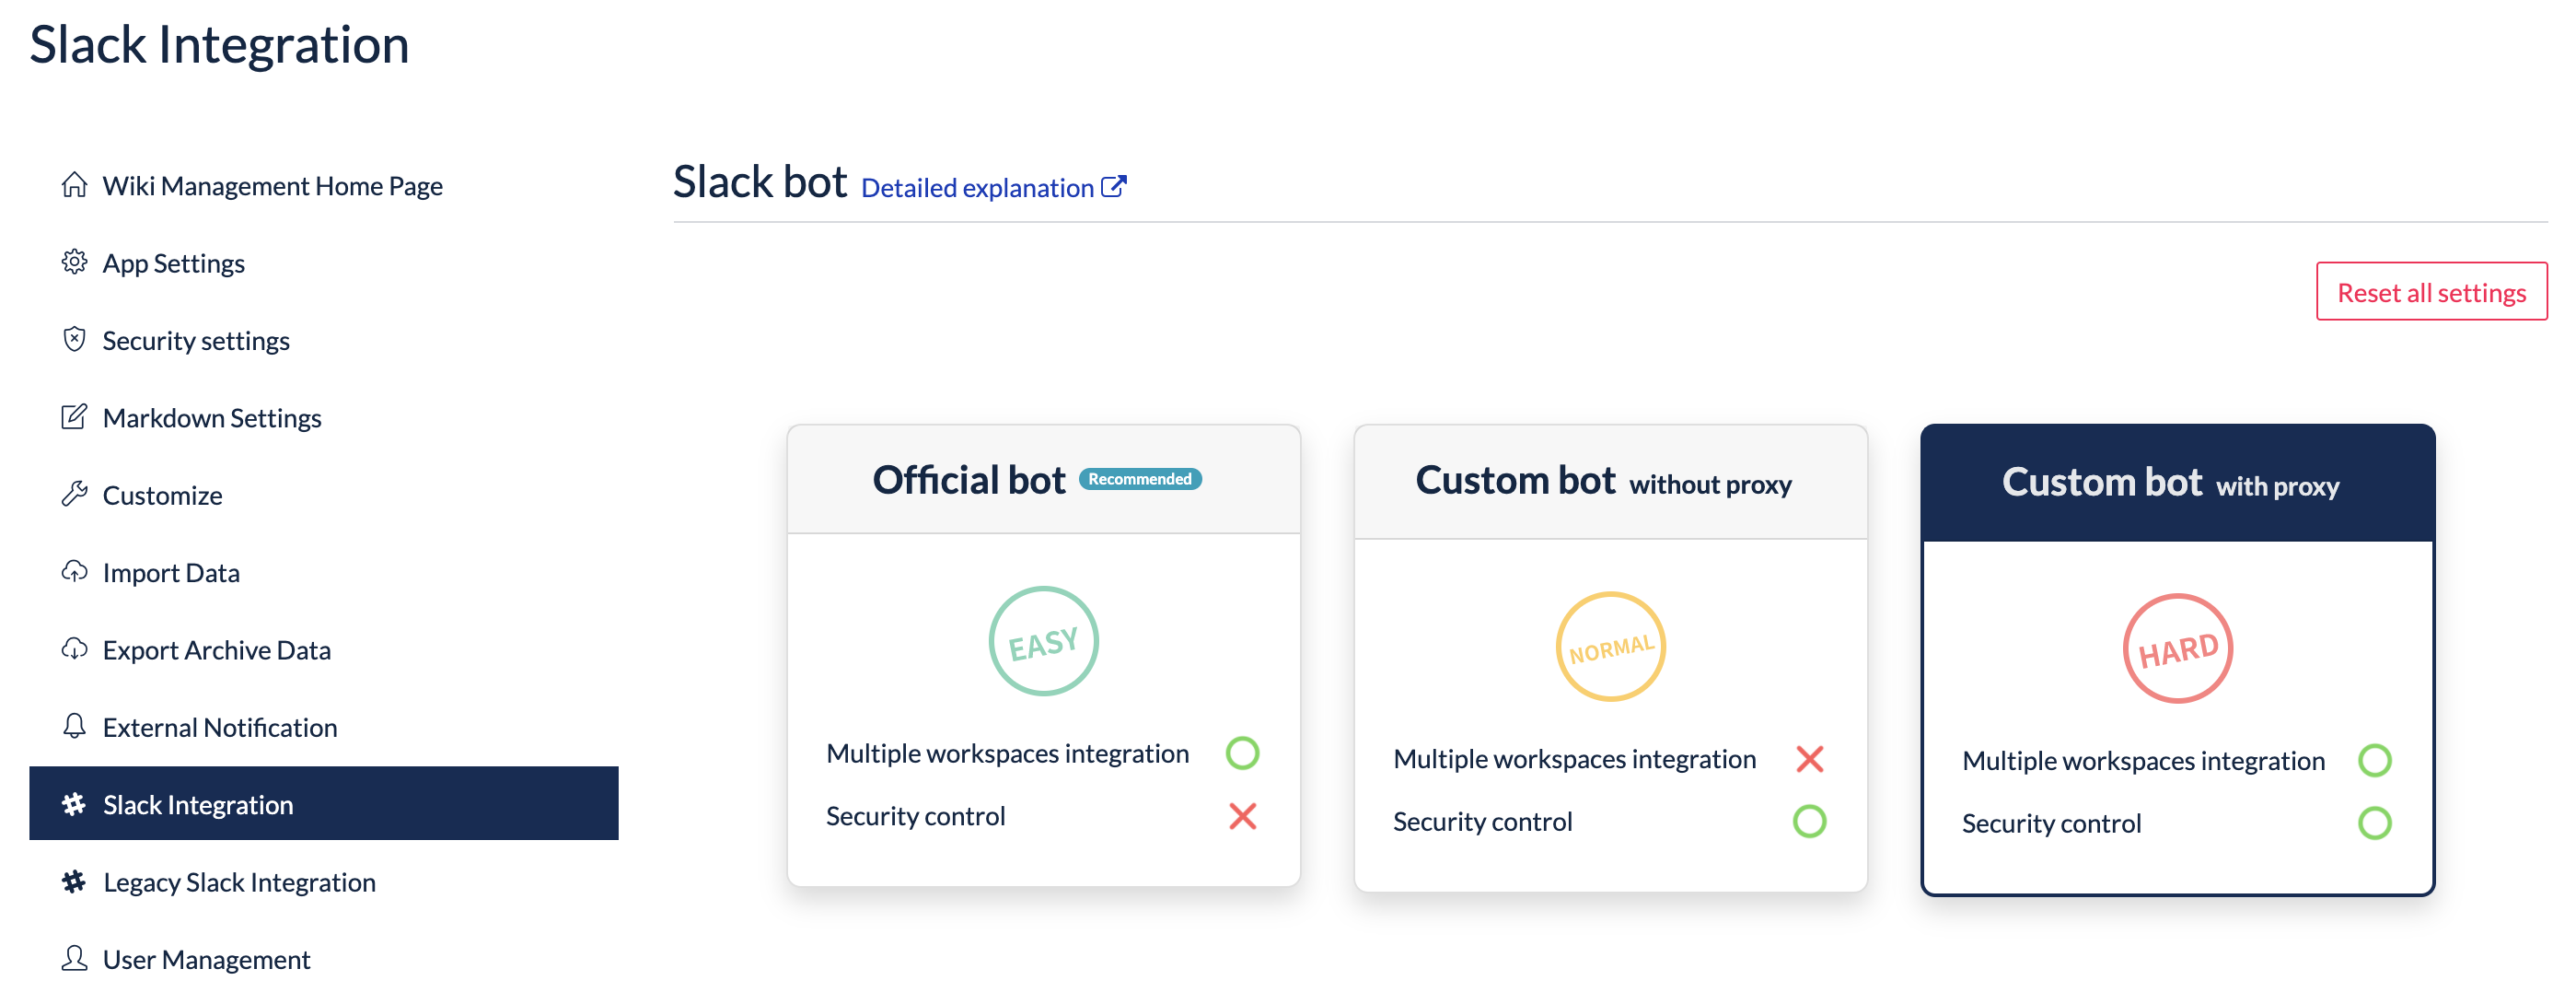 slack-bot-selecting-custom-bot-with-proxy